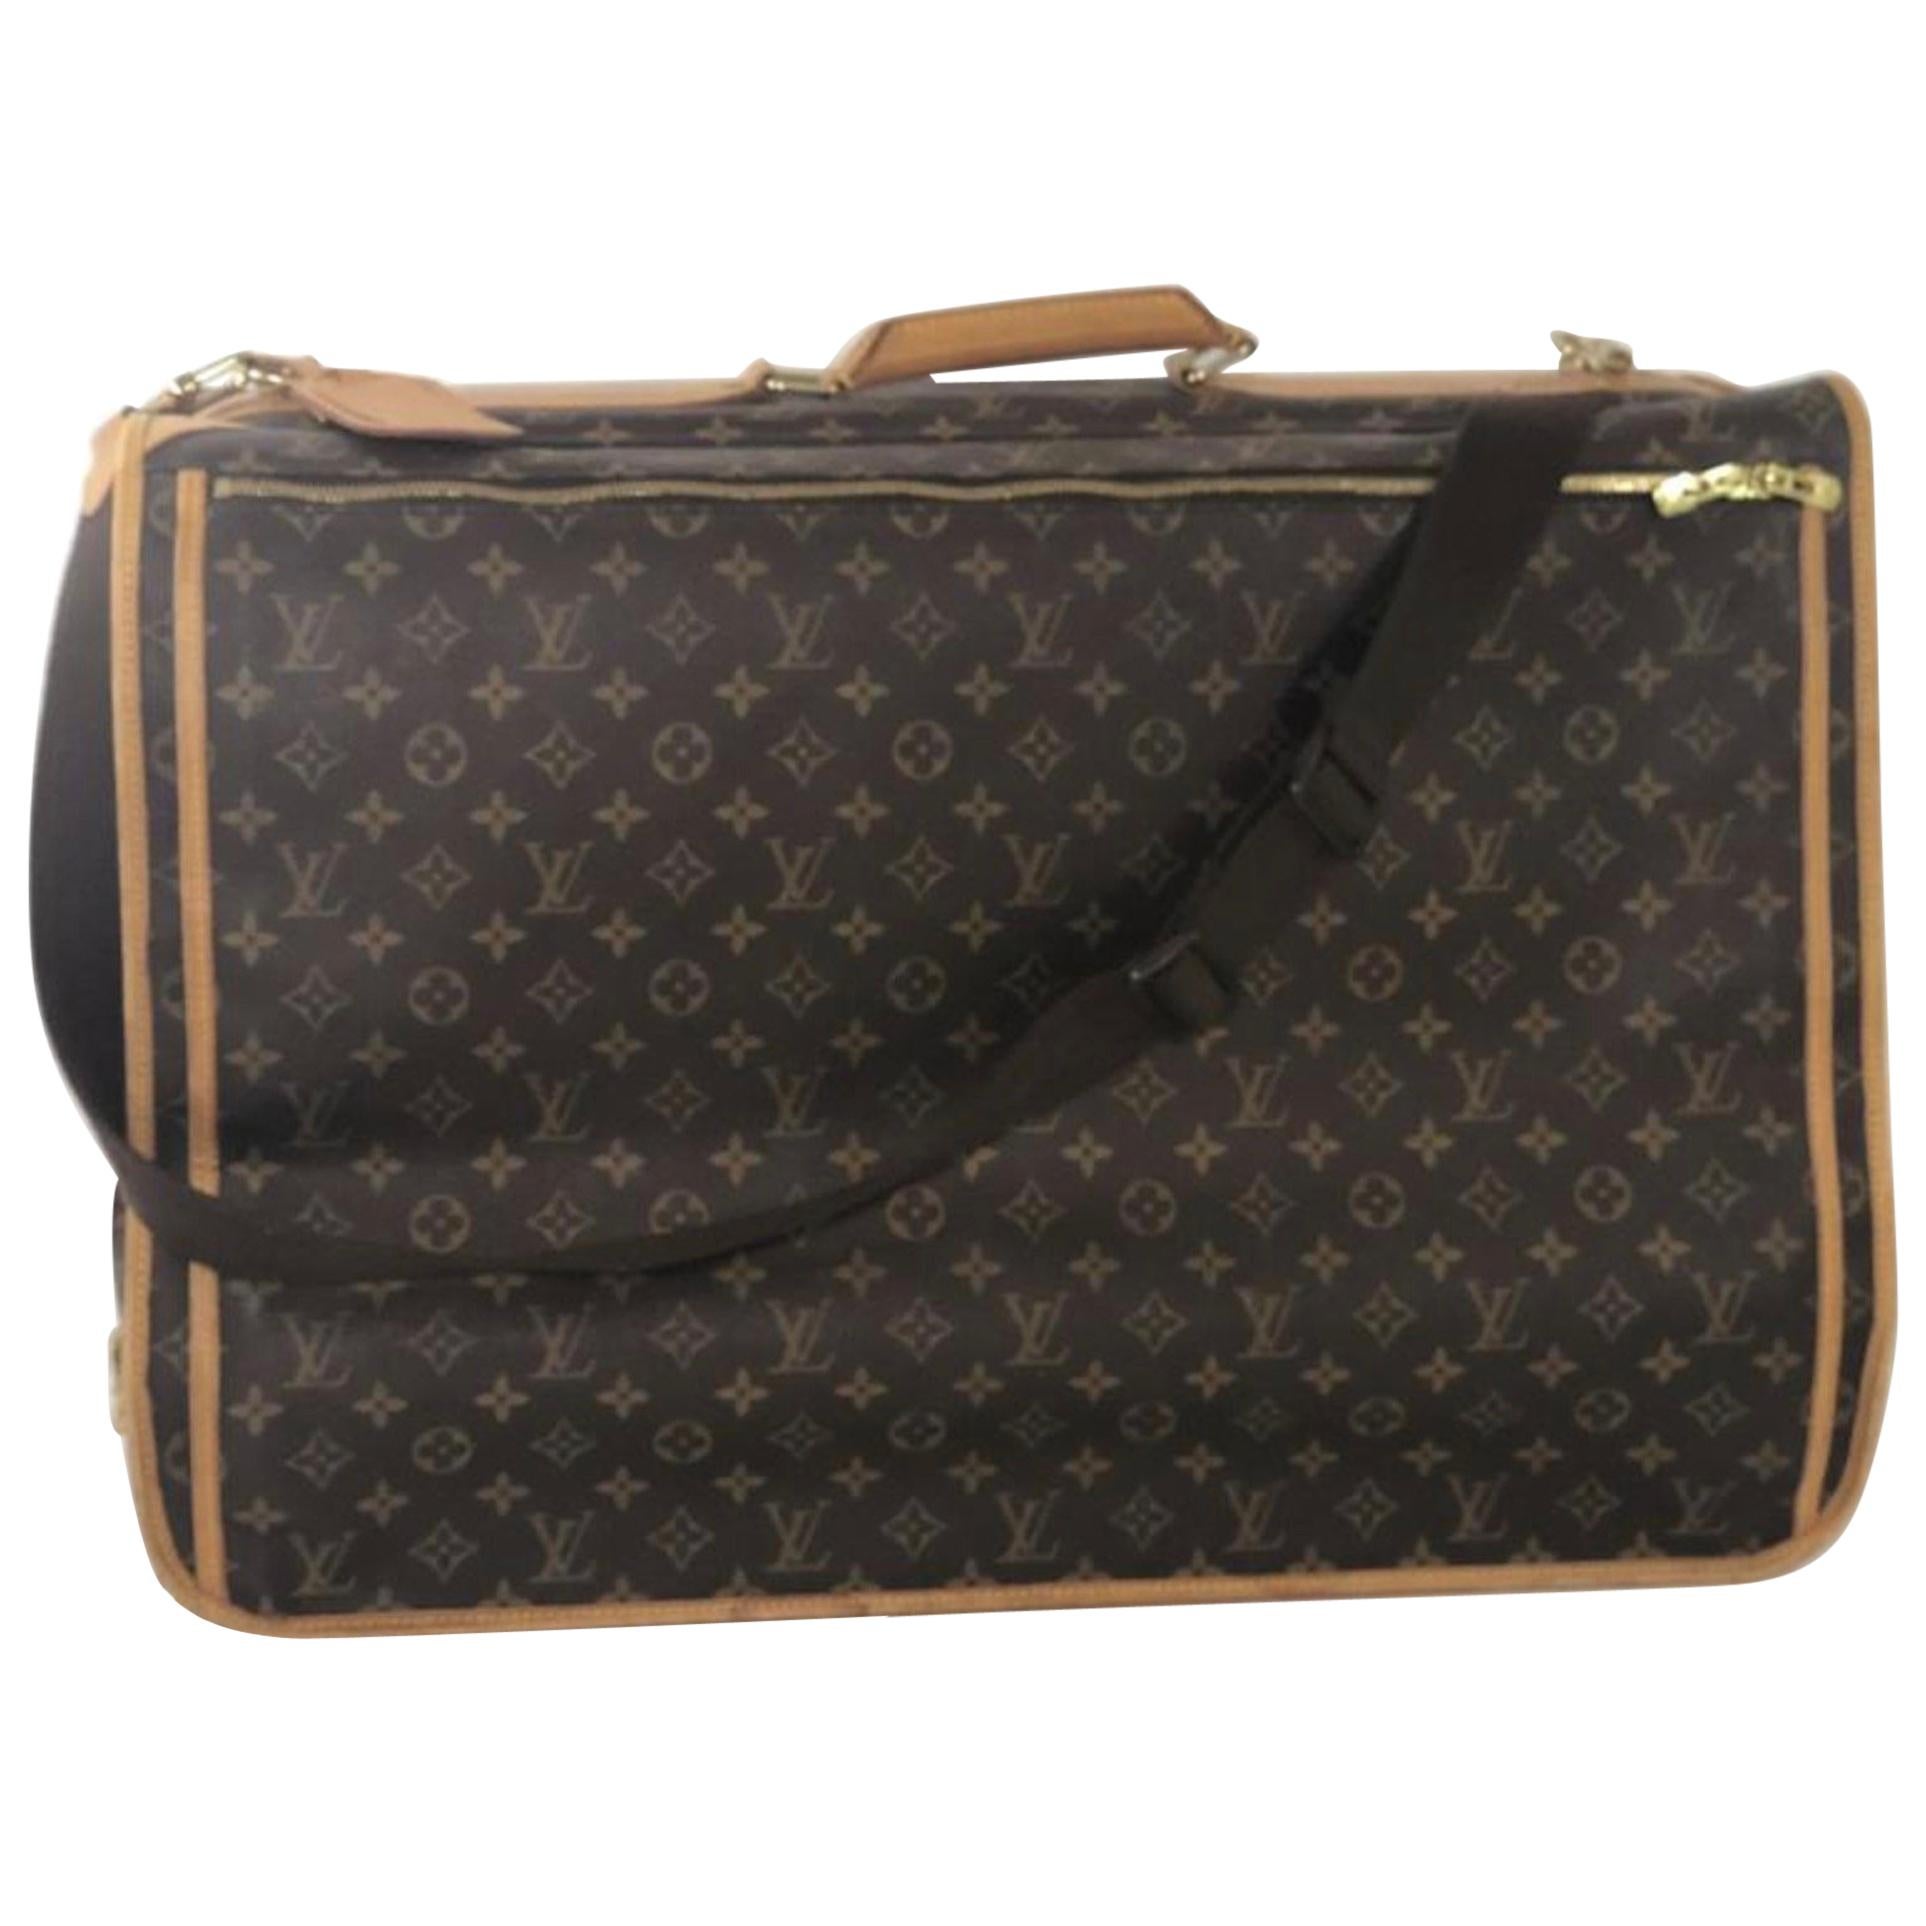  Louis Vuitton Monogram Portable Cabine Garment Cover Travel Handbag For Sale